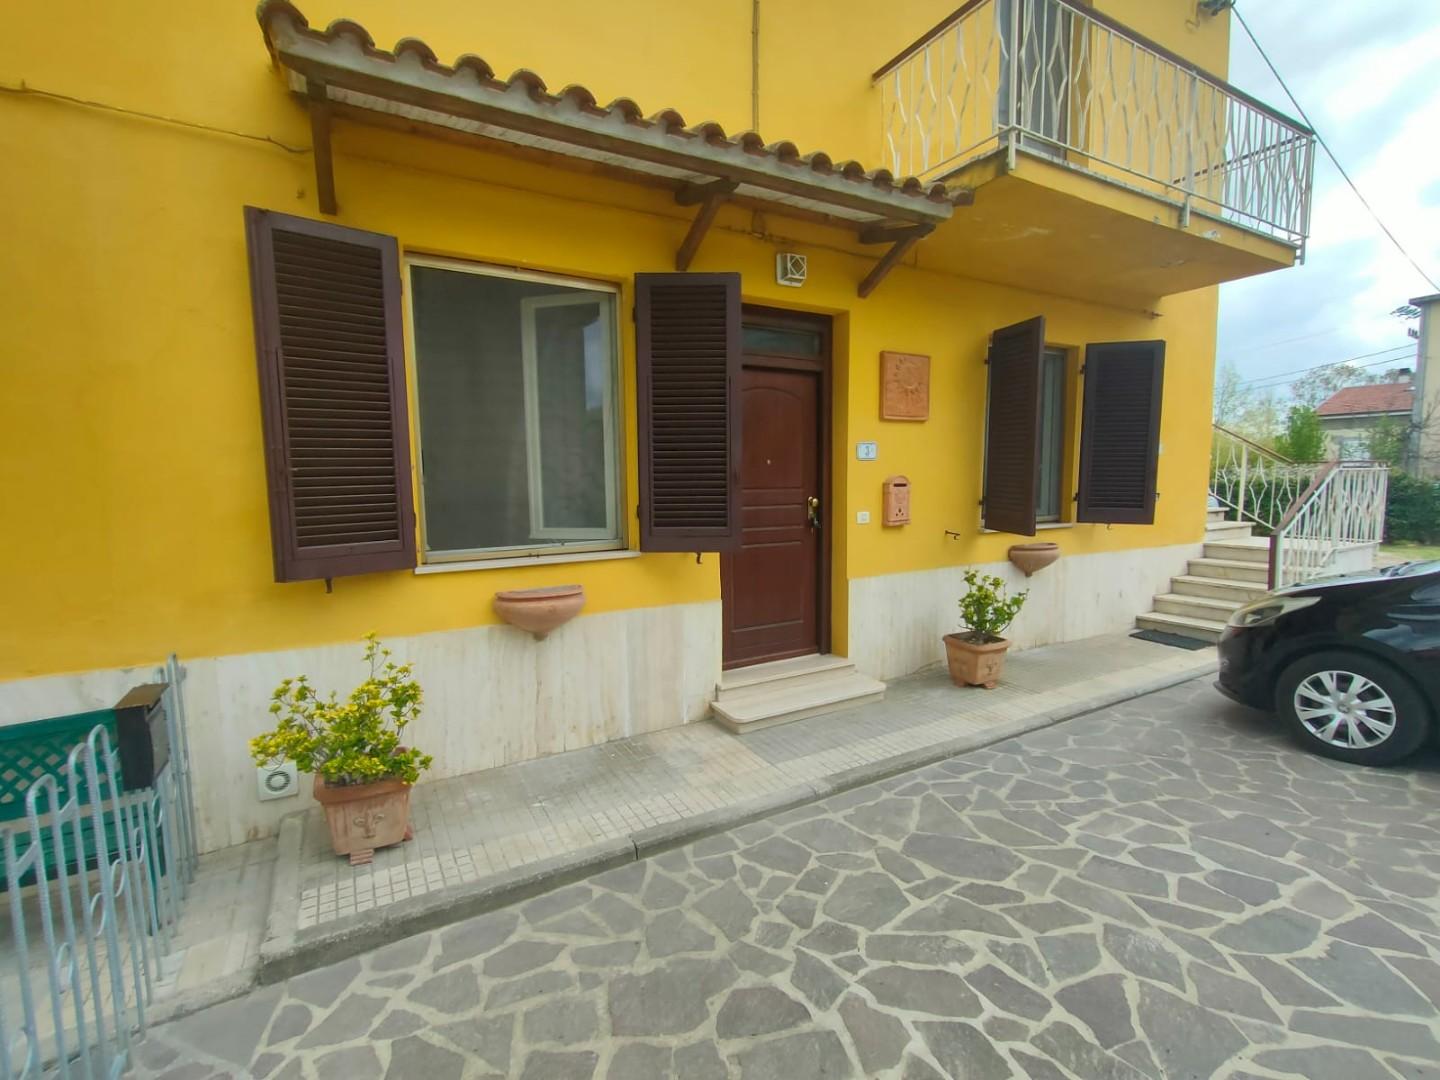 Apartment for rent in Capannoli (PI)